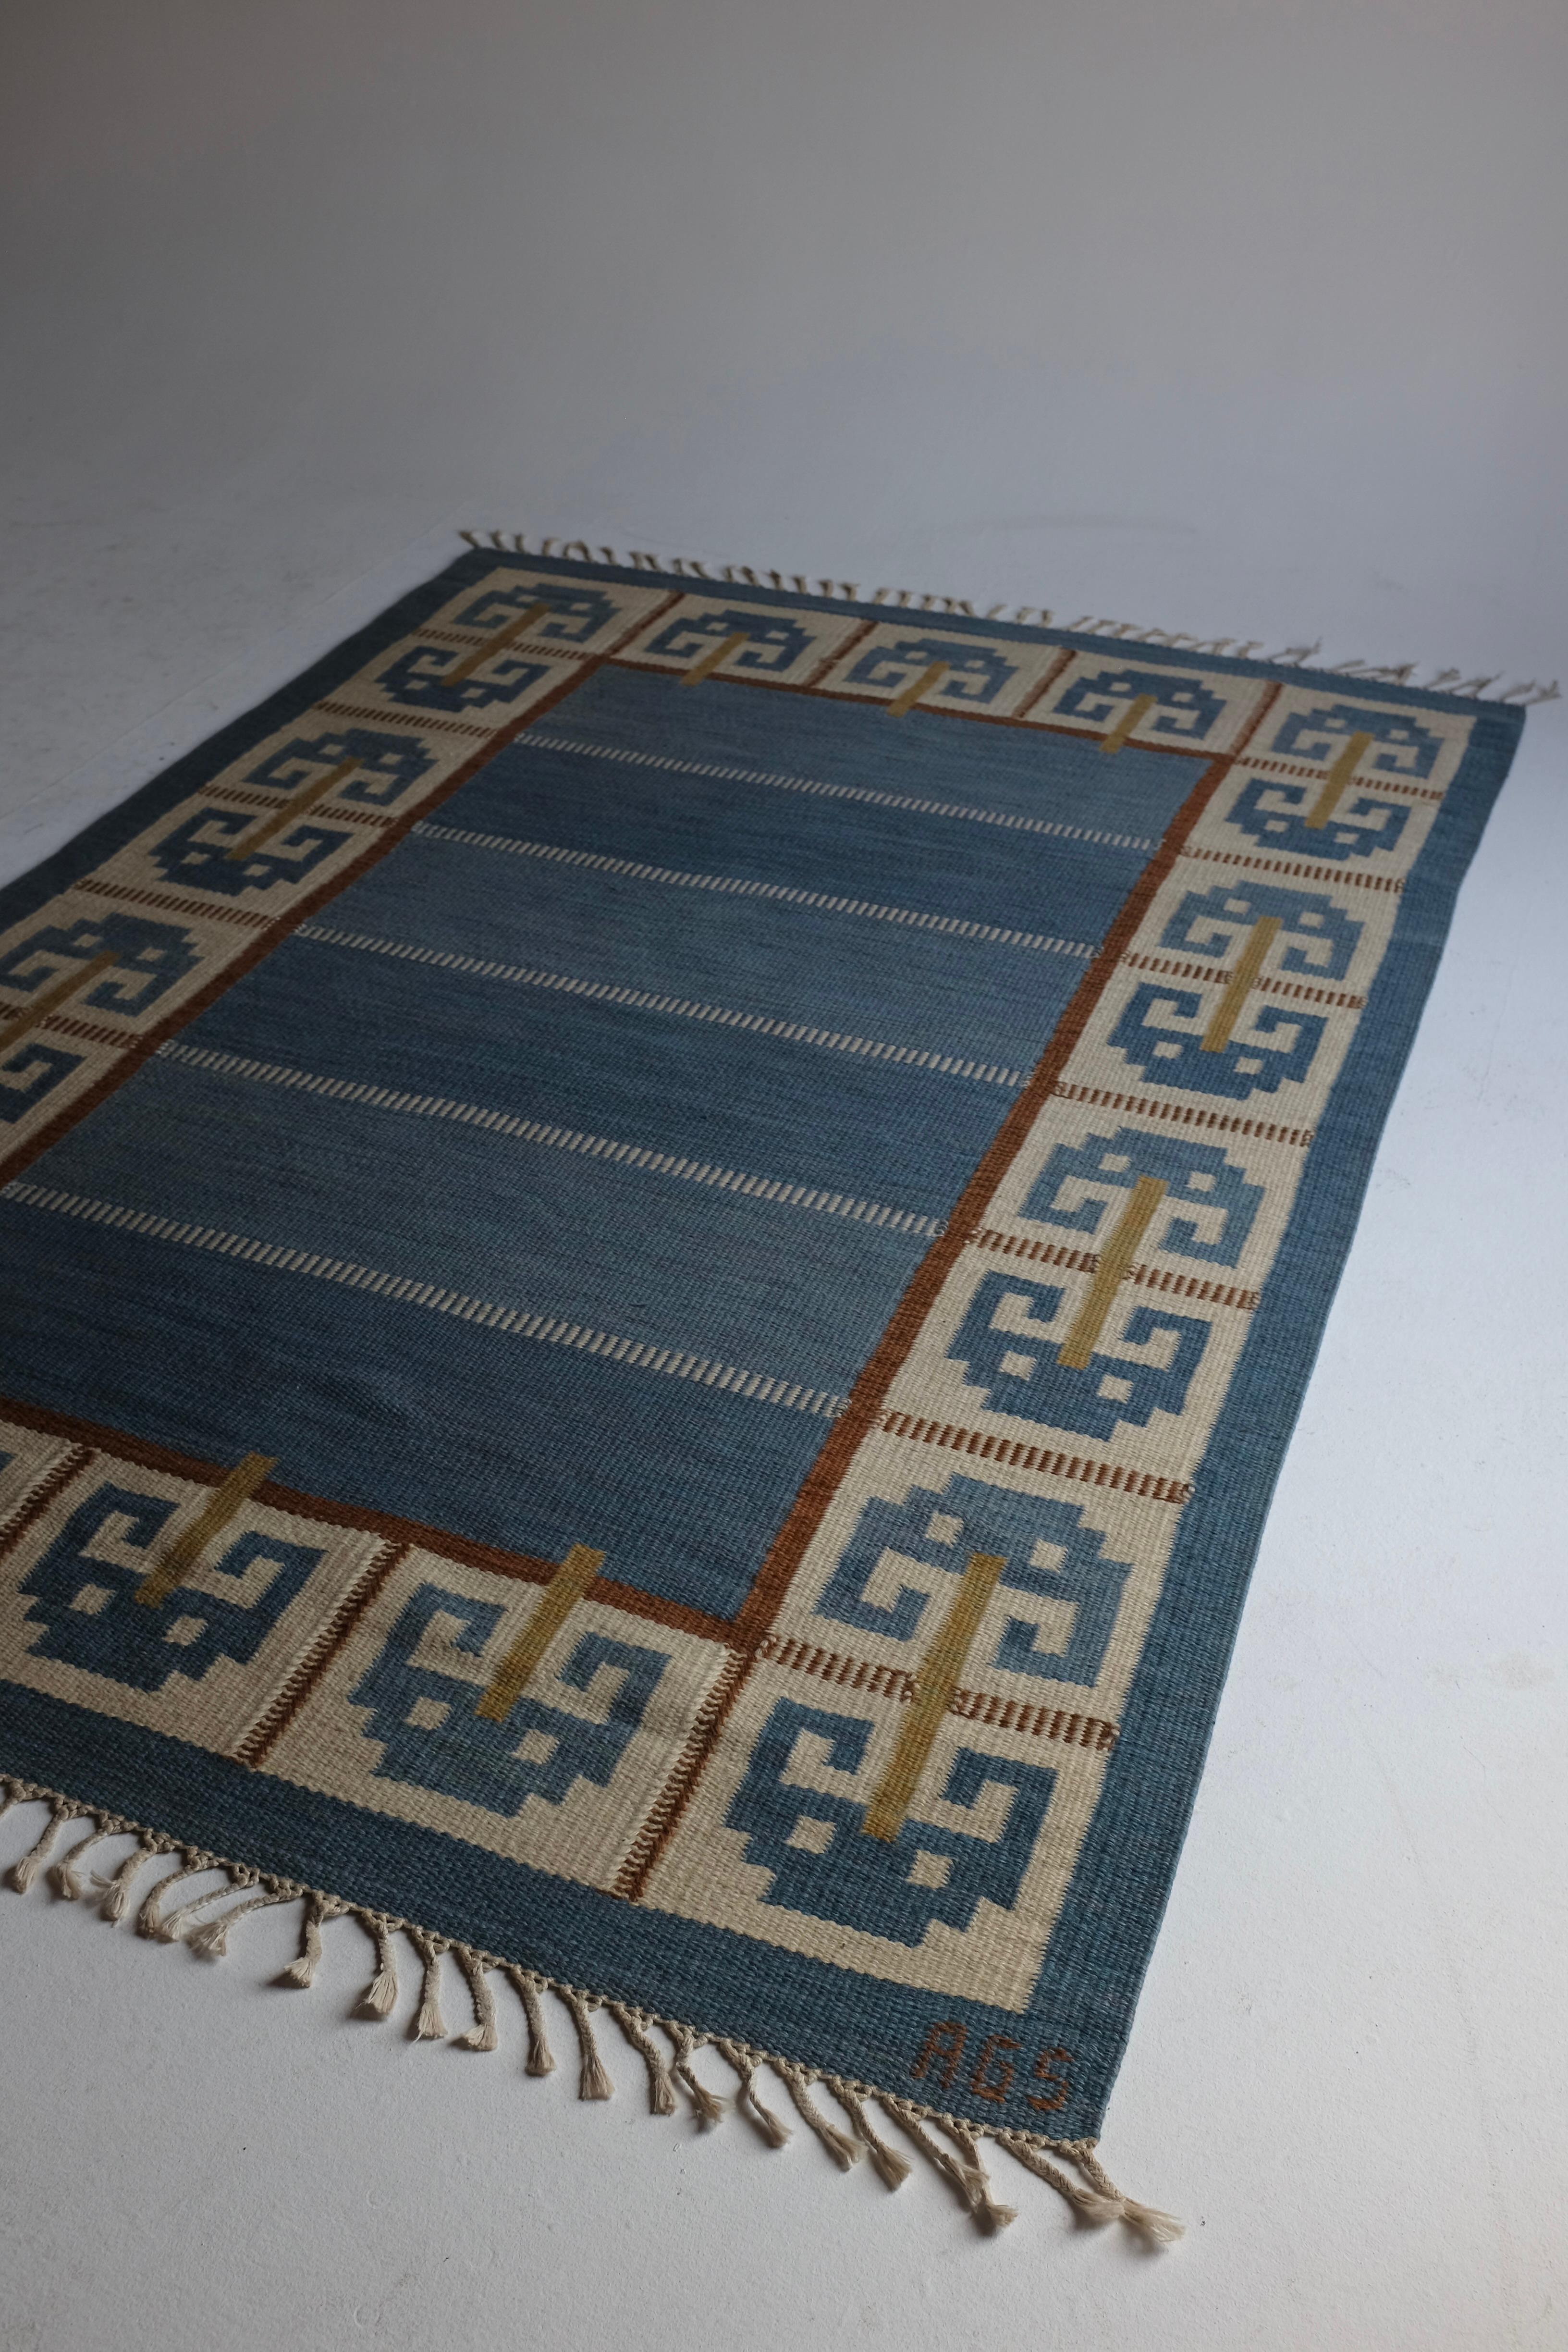 Vintage Swedish Kilim rug in the design called 